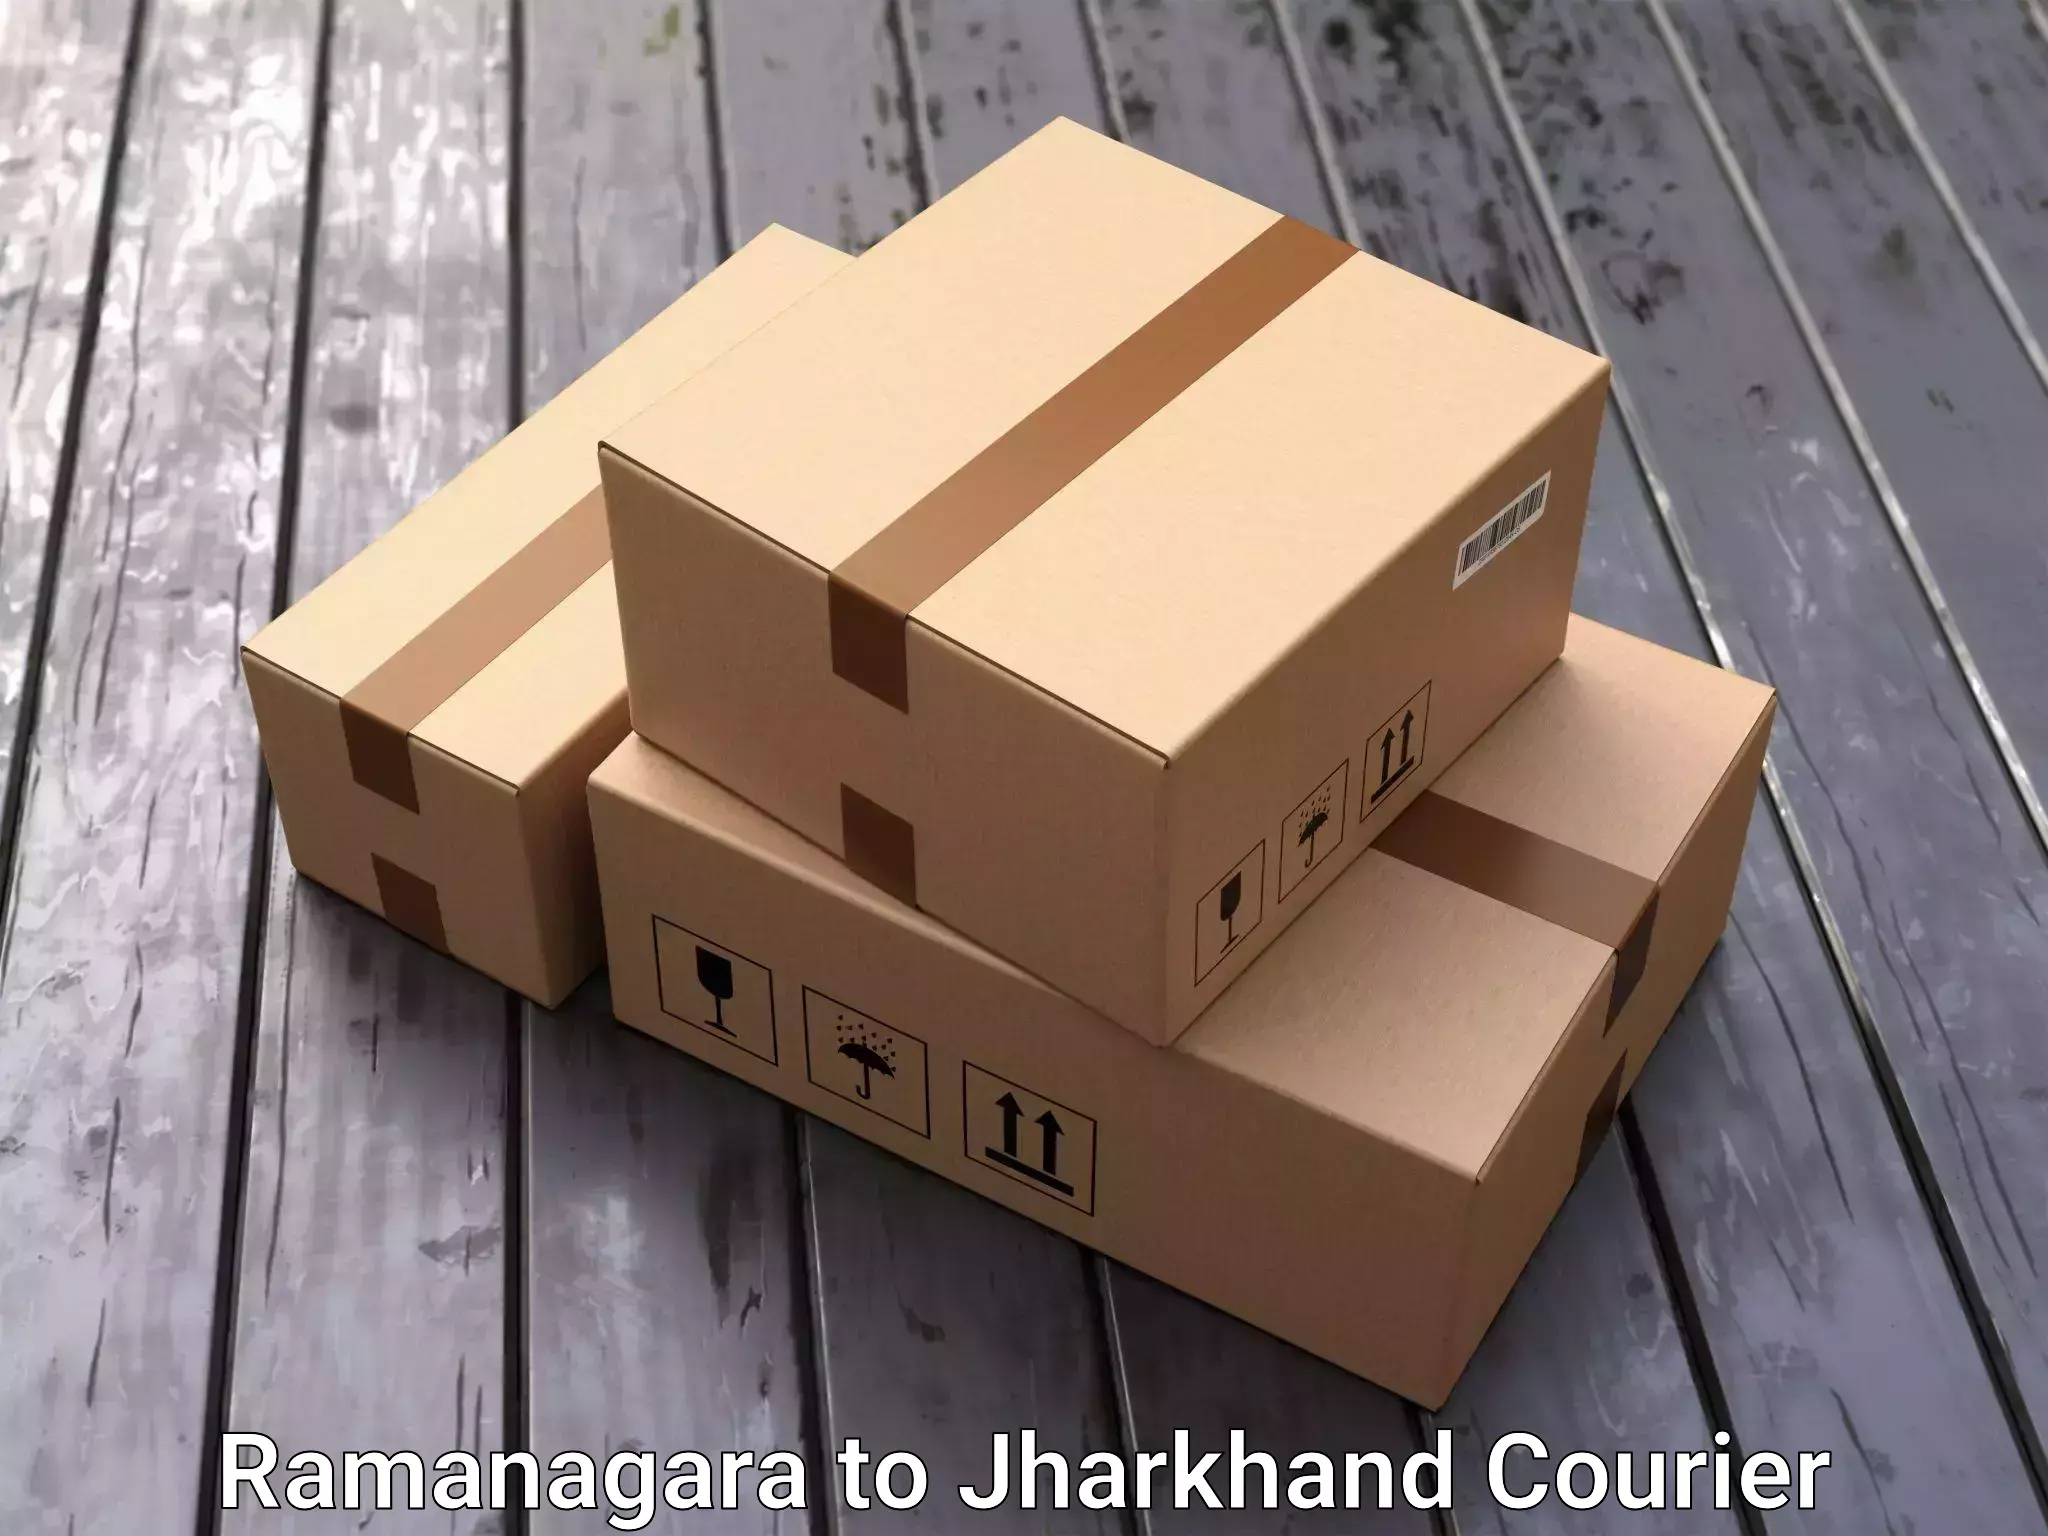 Furniture moving experts Ramanagara to Shikaripara